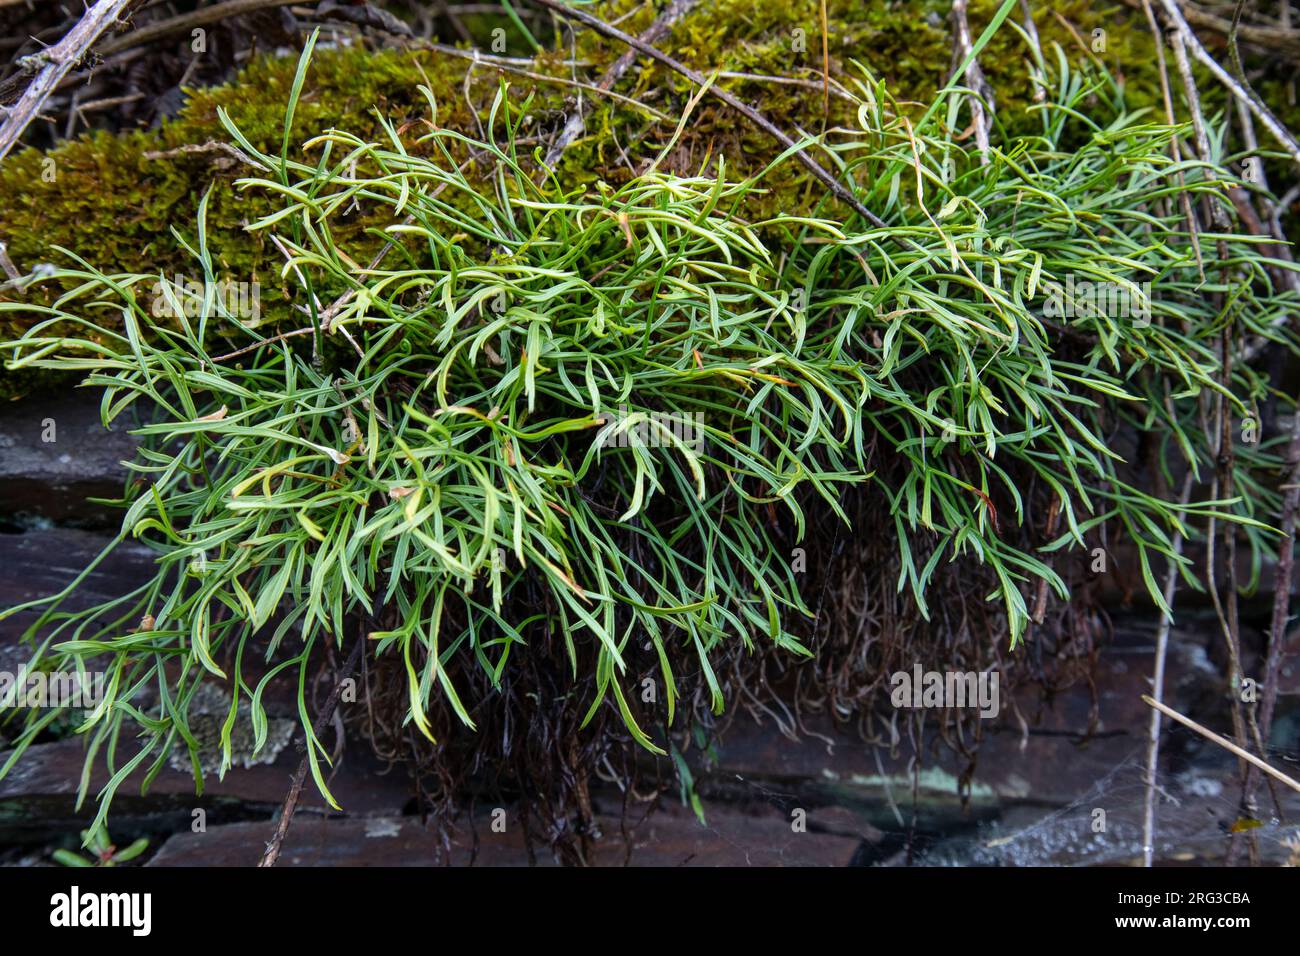 Forked spleenwort, Asplenium septentrionale Stock Photo